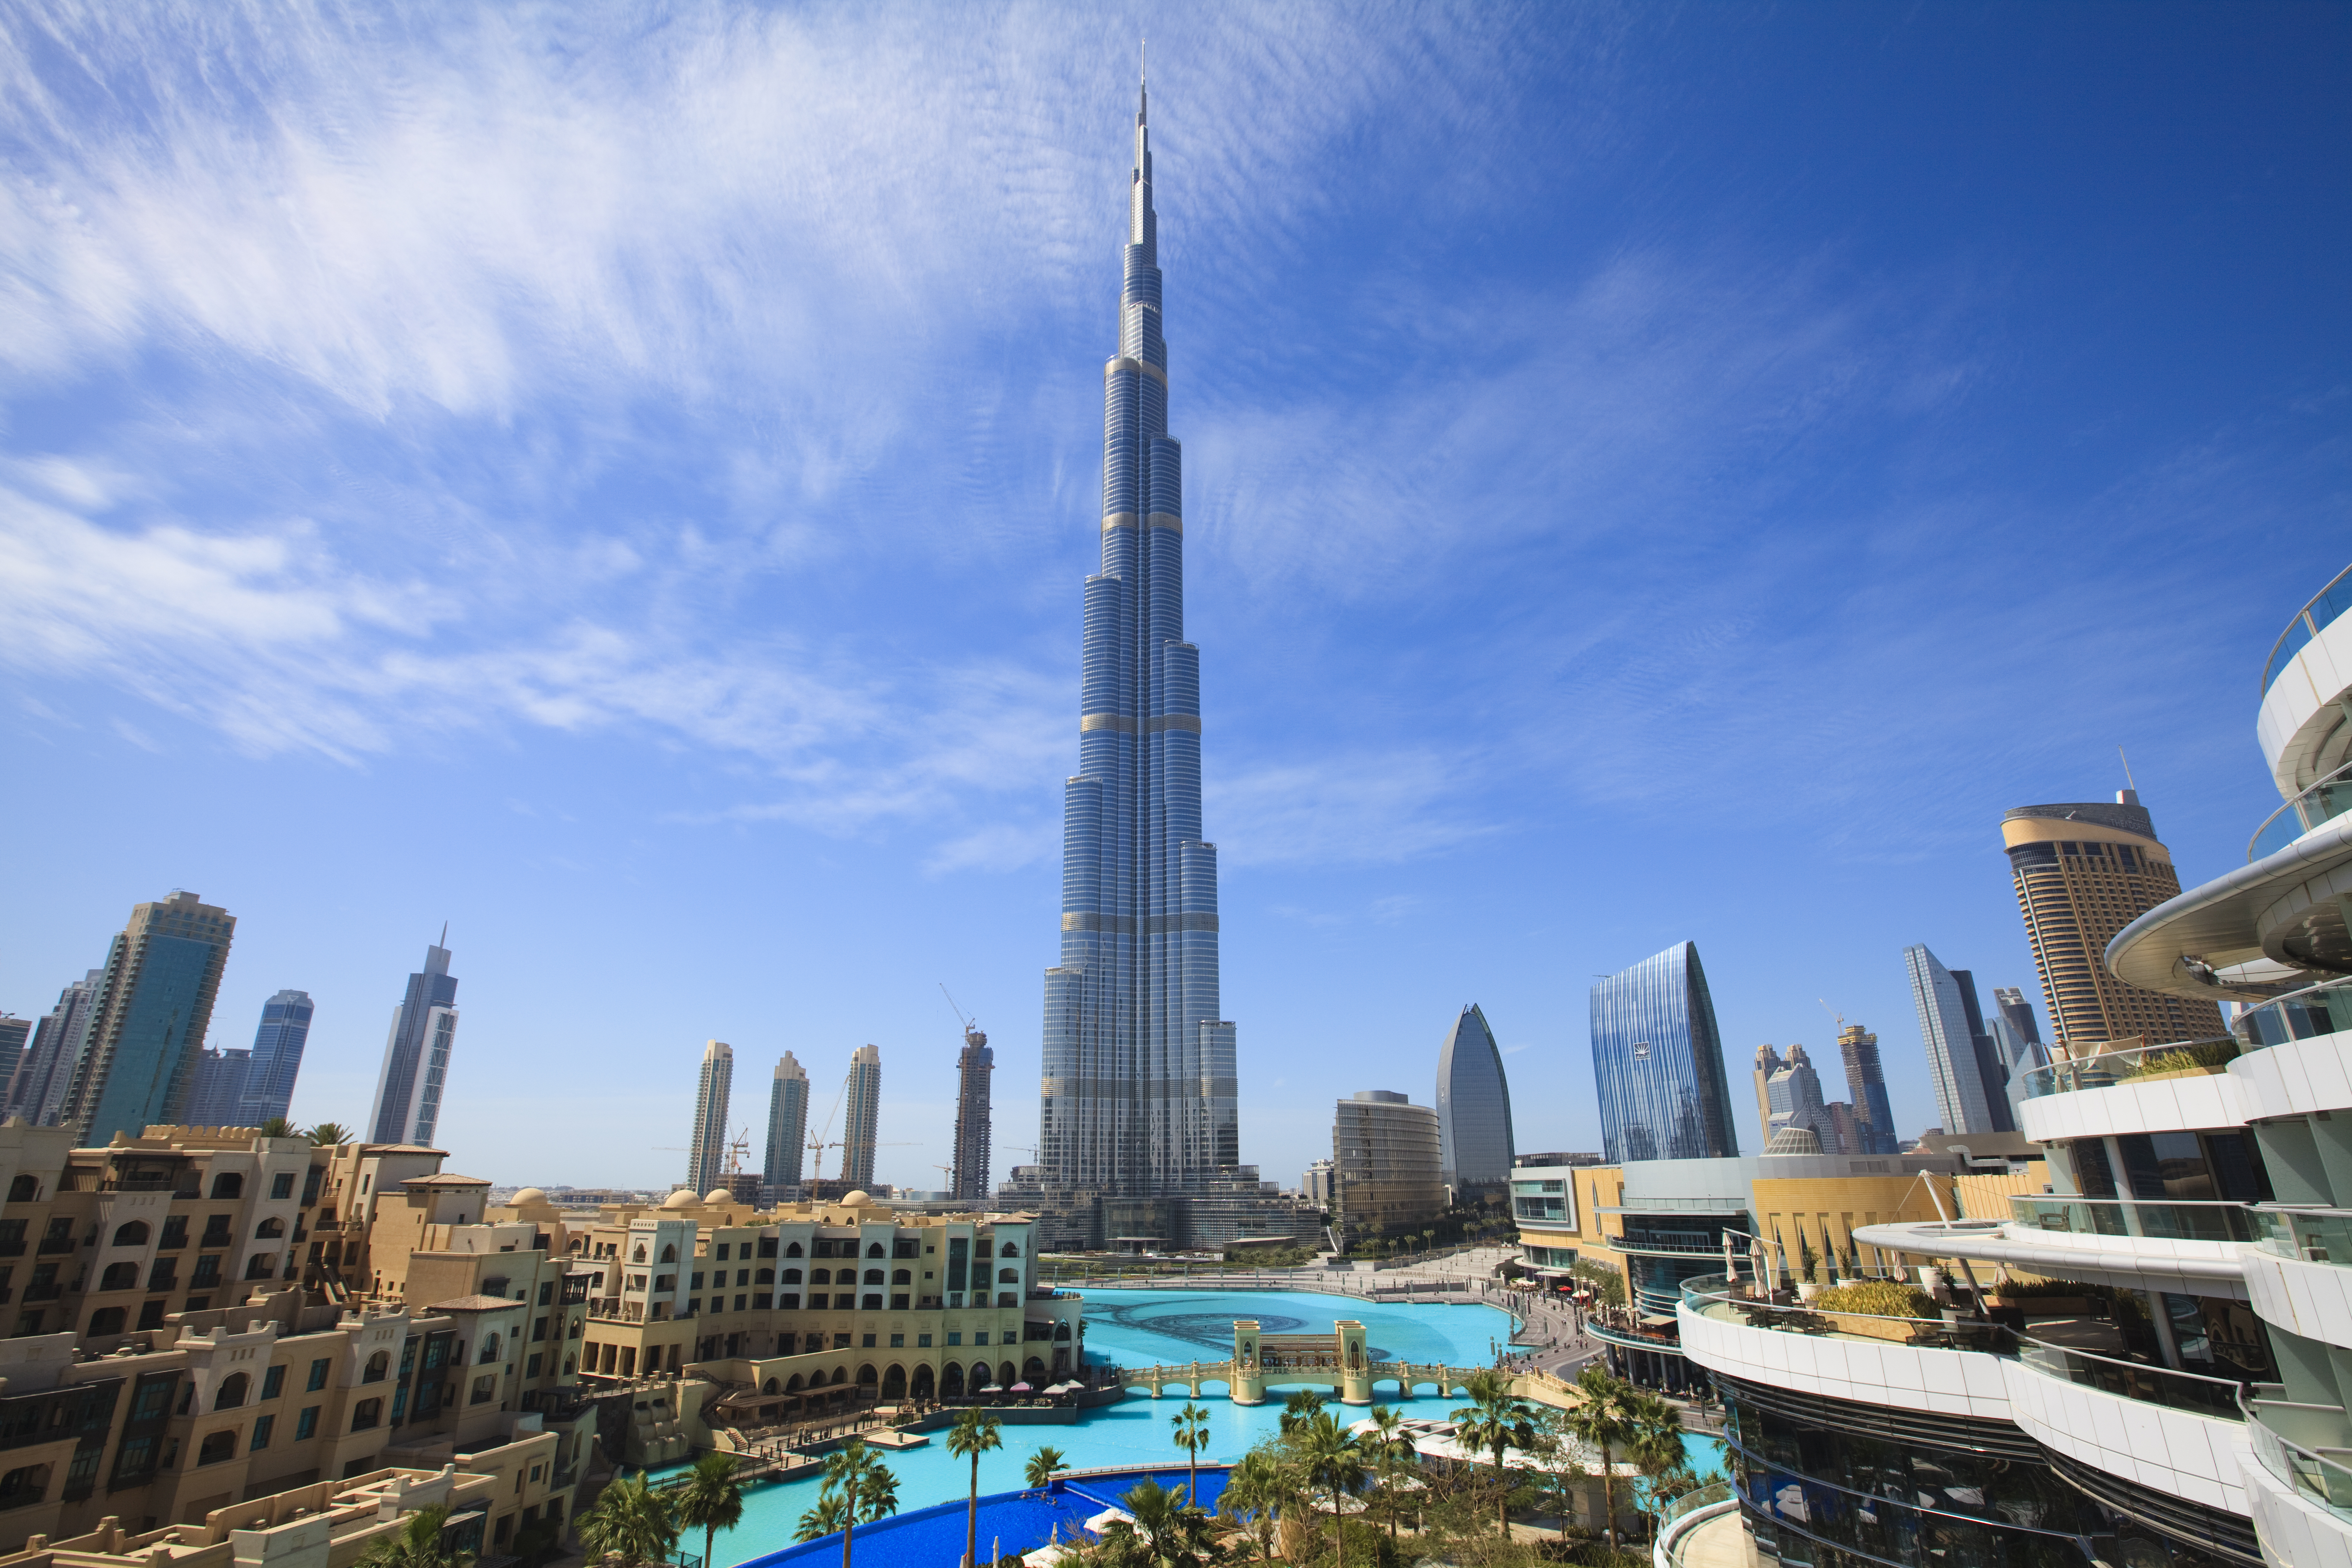 Der Burj Khalifa ist der höchste Turm der Welt